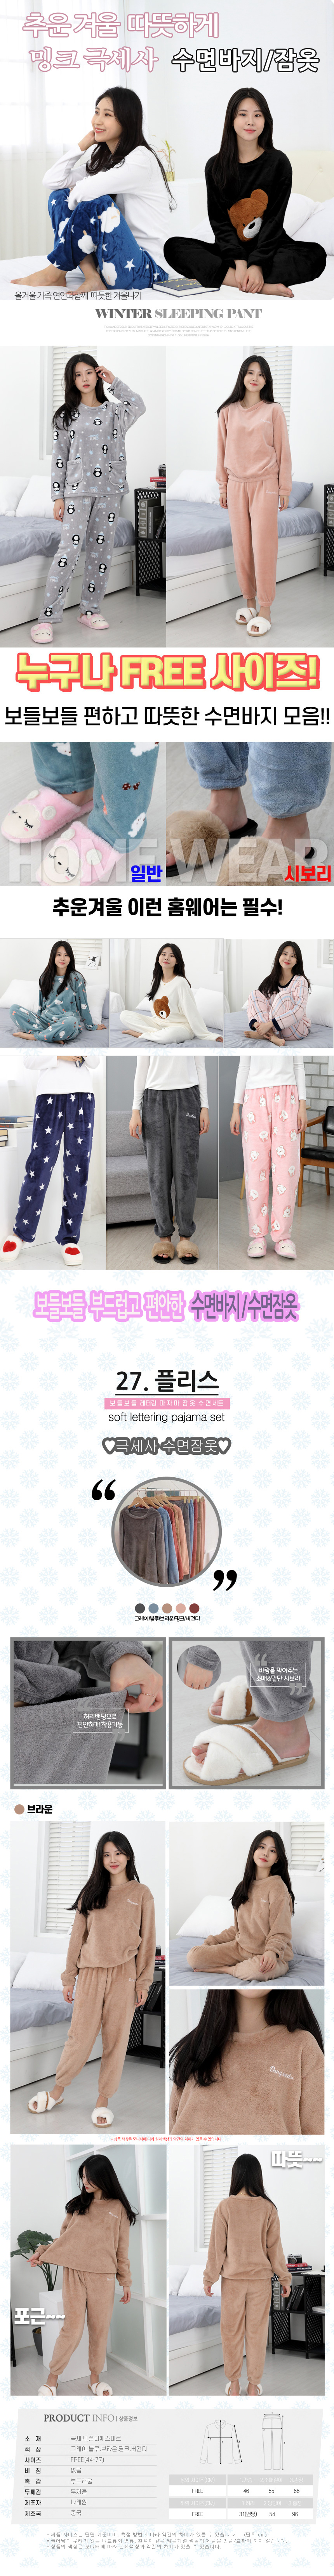 sleeping_pajamas_set_27_04.jpg